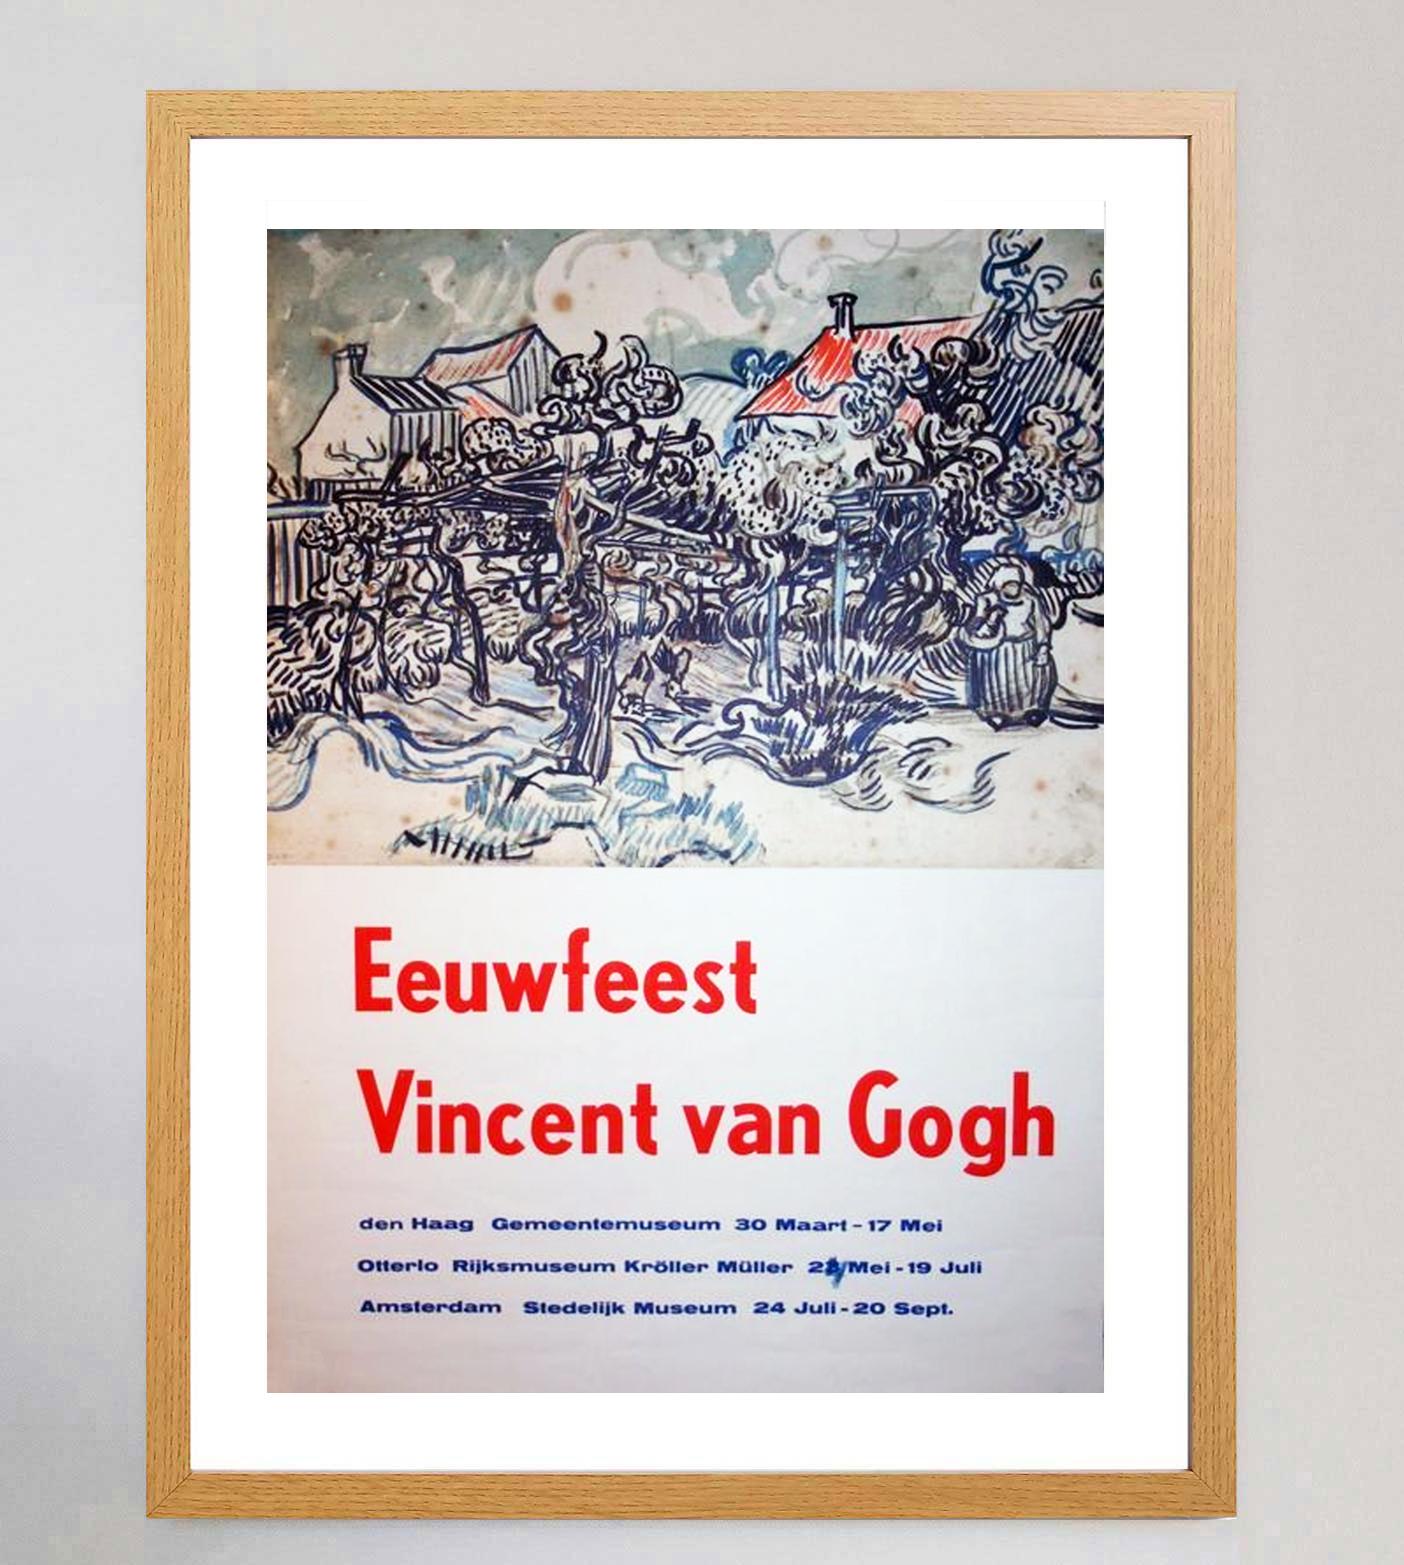 van gogh poster from exhibit